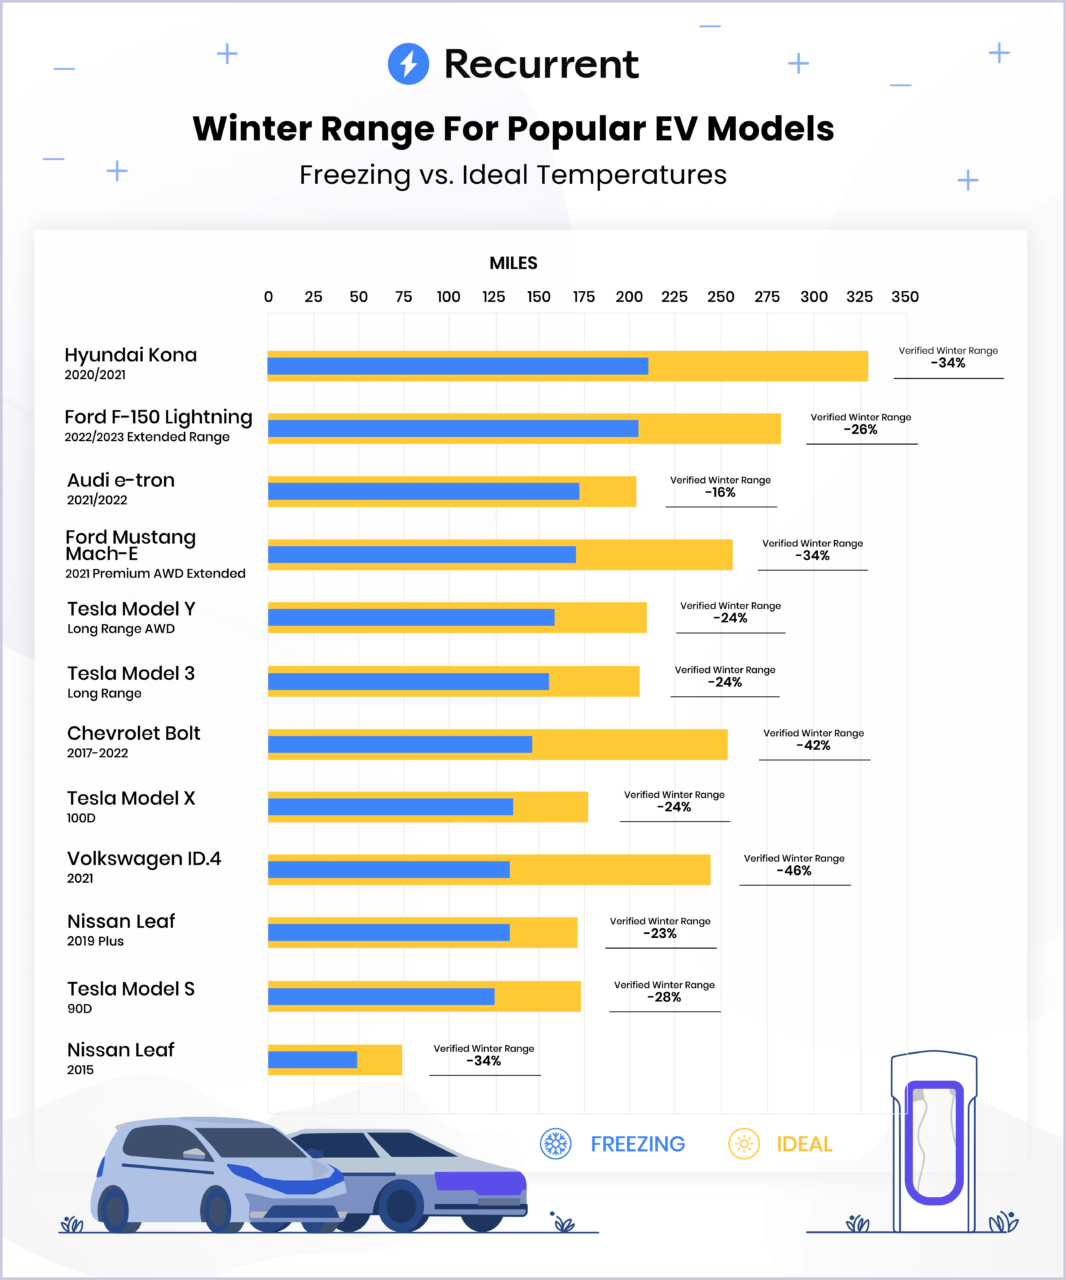 Wykres słupkowy przedstawiający zasięg zimowy popularnych modeli samochodów elektrycznych (EV) przy mroźnych i idealnych temperaturach, porównujący zmniejszenie zasięgu w zimie z wartościami idealnymi.